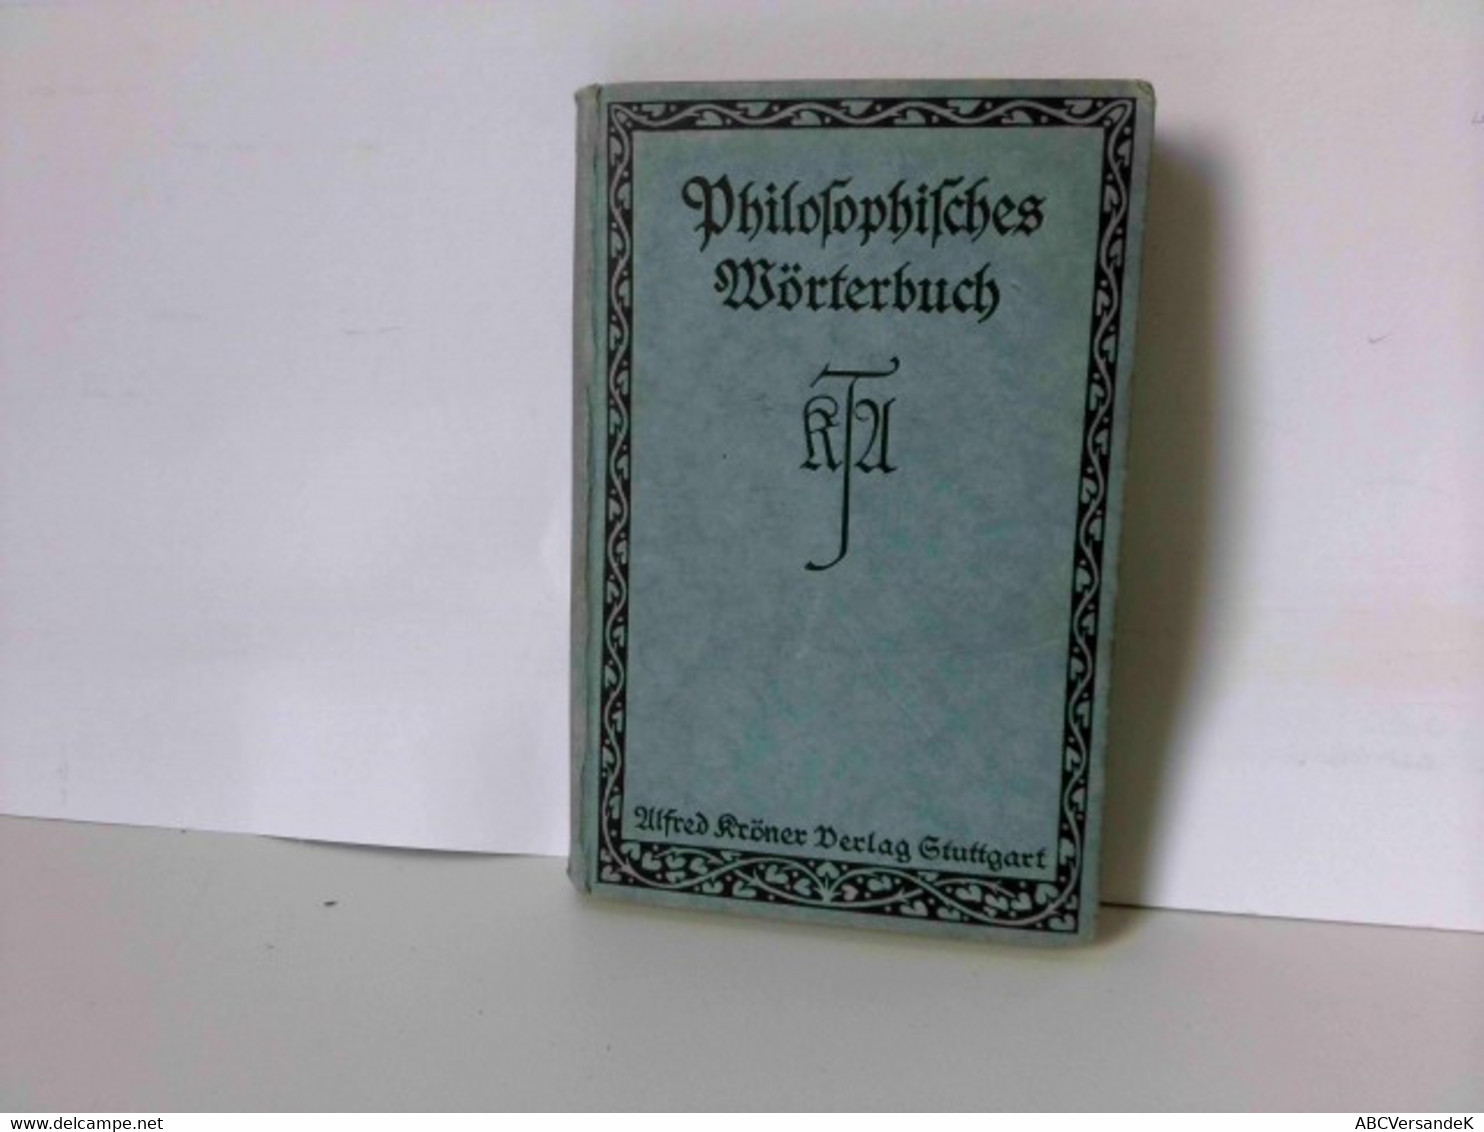 Philosophisches Wörterbuch - Philosophy